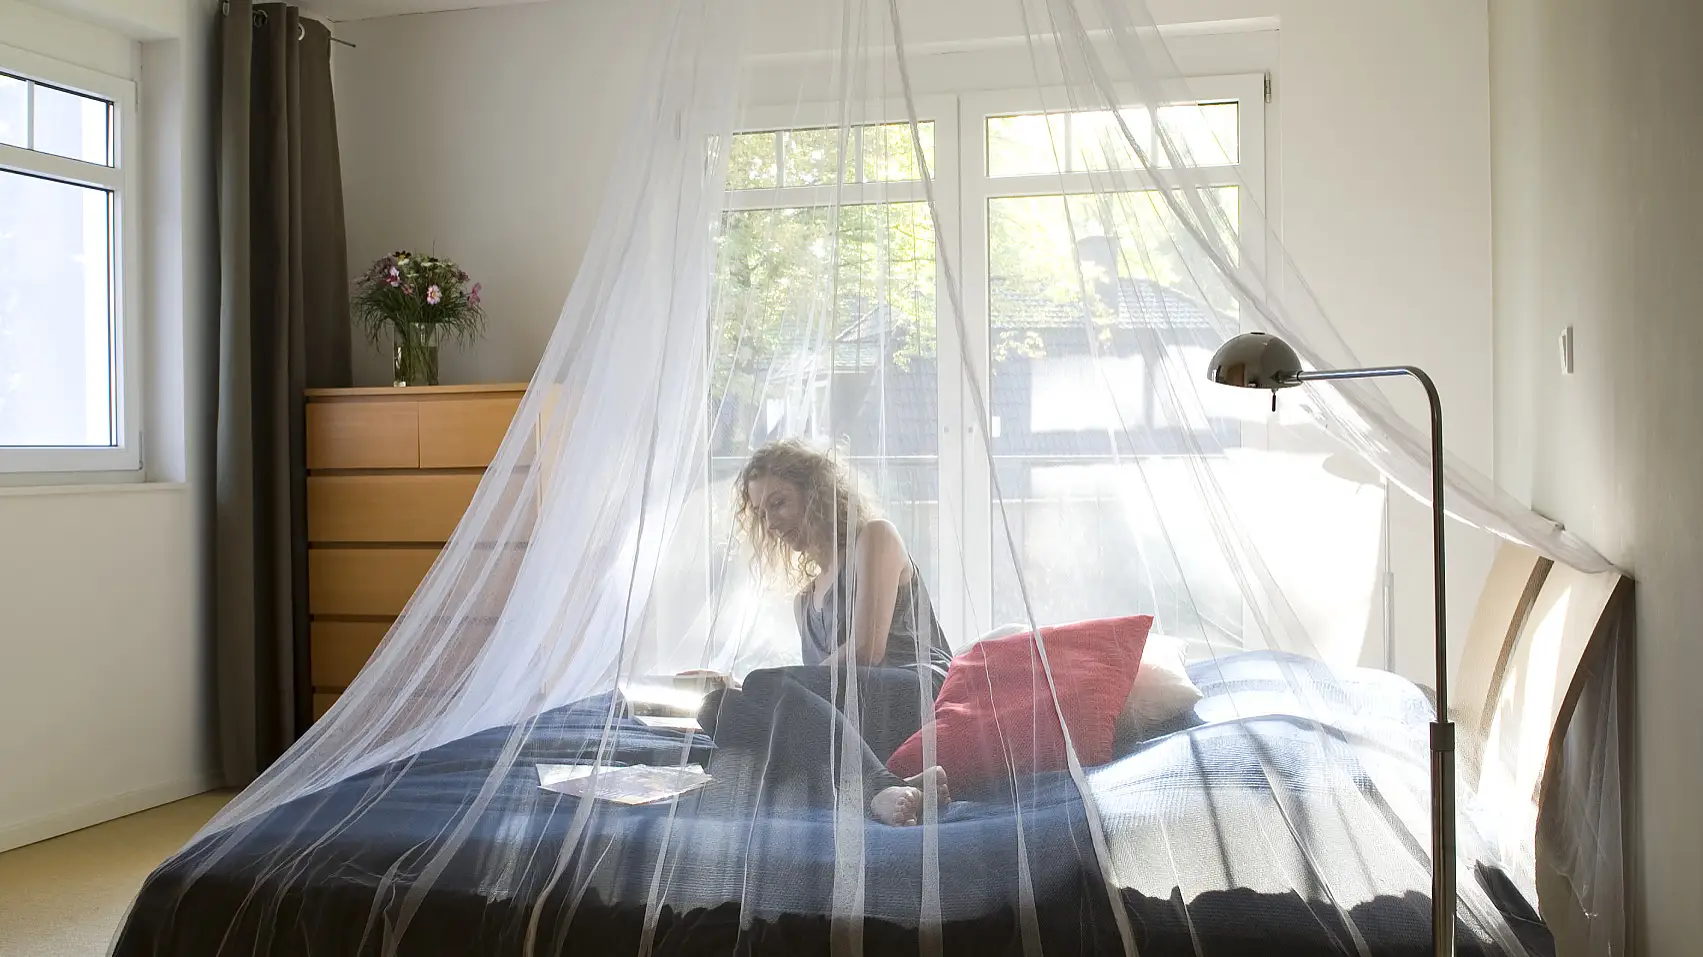 A mennyezetre rögzített szúnyogháló otthon a hálószobában vagy akár utazáskor is megvédi a rovarokkal szemben.